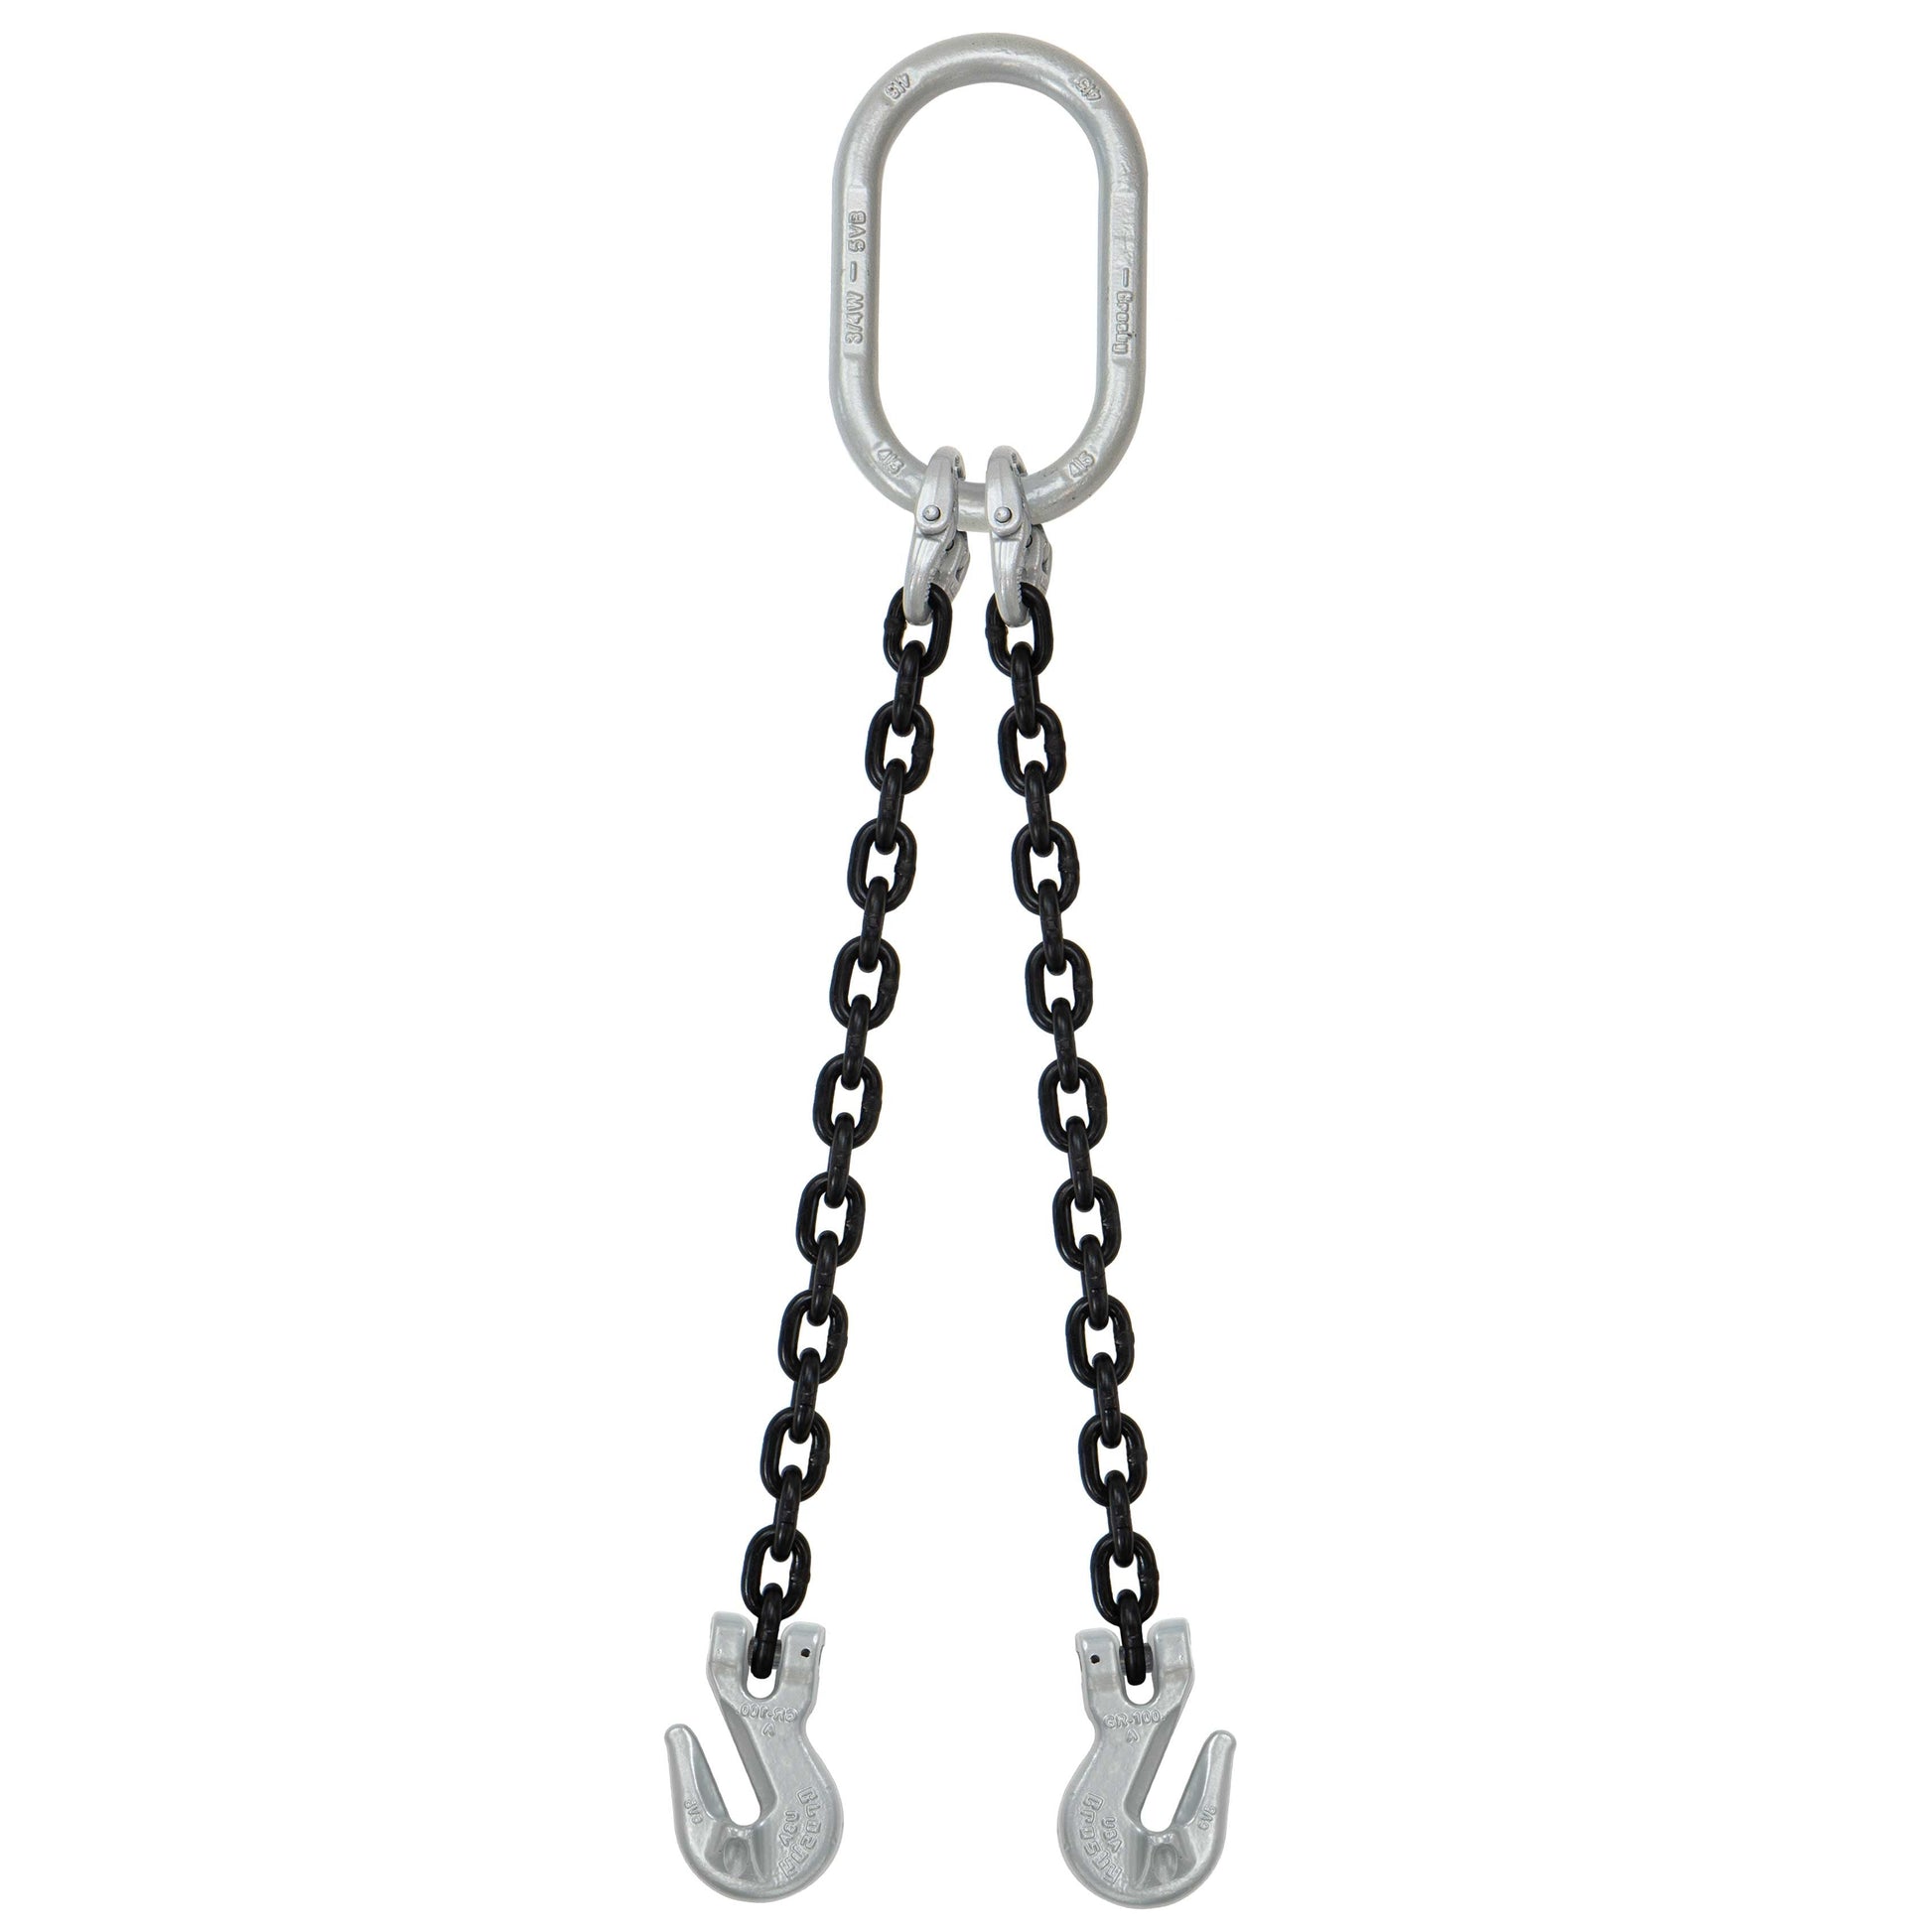 5/16" x 16' - Domestic 2 Leg Chain Sling w/ Crosby Grab Hooks - Grade 100